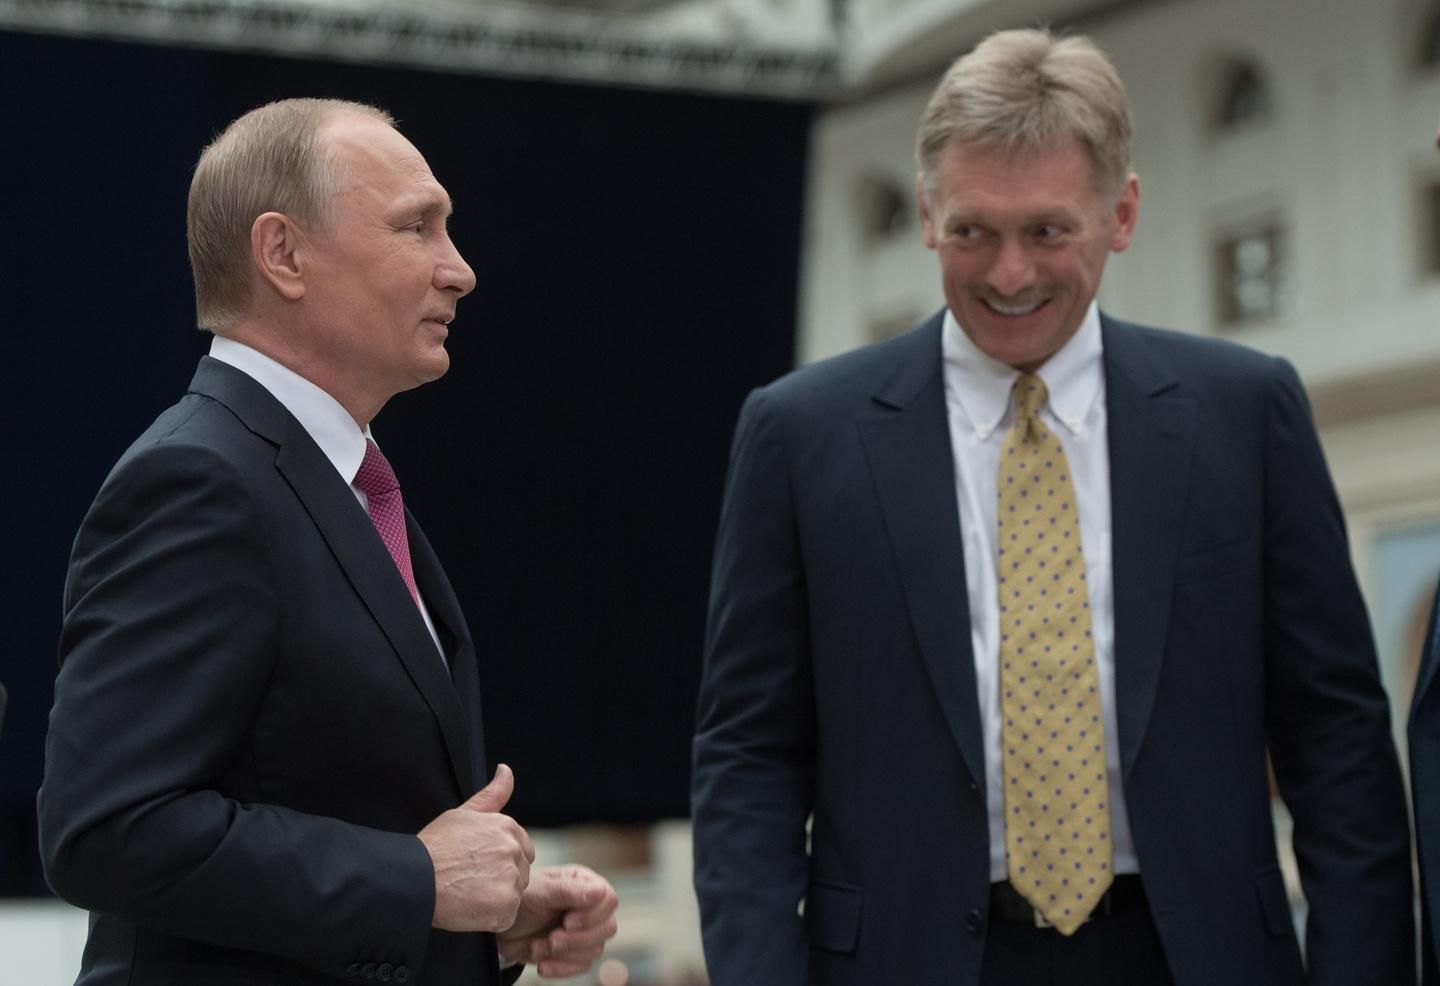 "Не хочемо у цьому брати участь": У Кремлі зробили різку заяву про отруєння Скрипалів  